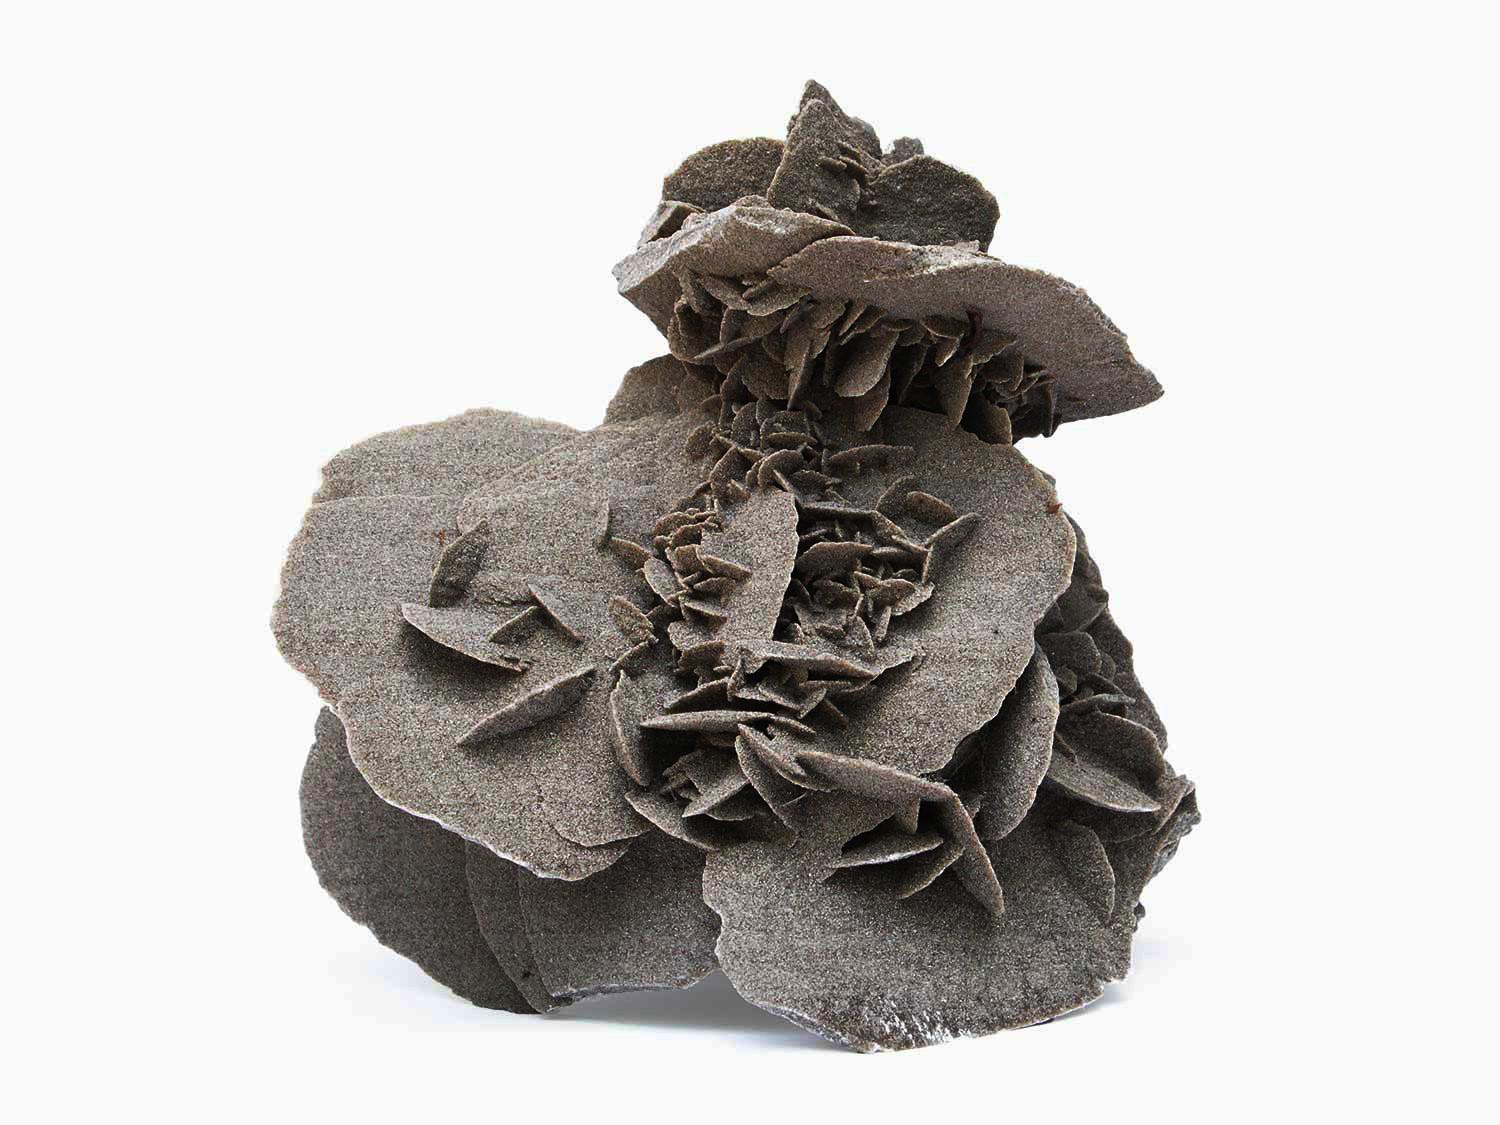 Skulpturaler grauer Elefantenohrselenit.

Elefantenohr-Selenite sind Rosettenformationen aus Gips- oder Barytkristallen, die Sandkörner enthalten, die Blütenblätter oder abgeflachte Kristallklumpen in einzigartigen Formen und Größen bilden. Die